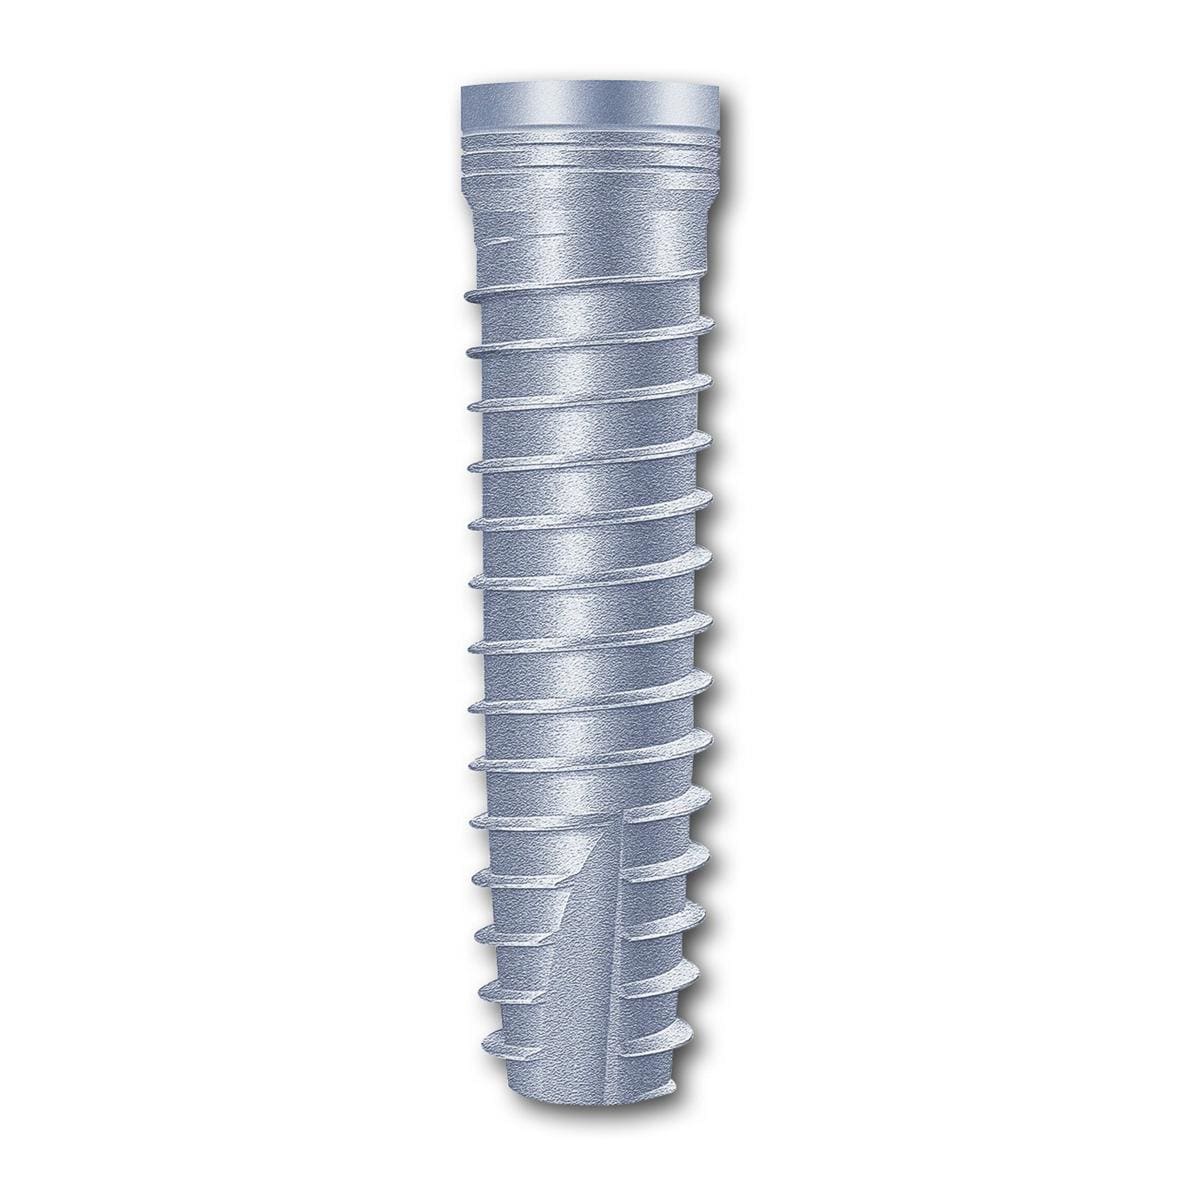 TL Implantat BONITex® Ø 4,3 mm - Länge 16 mm